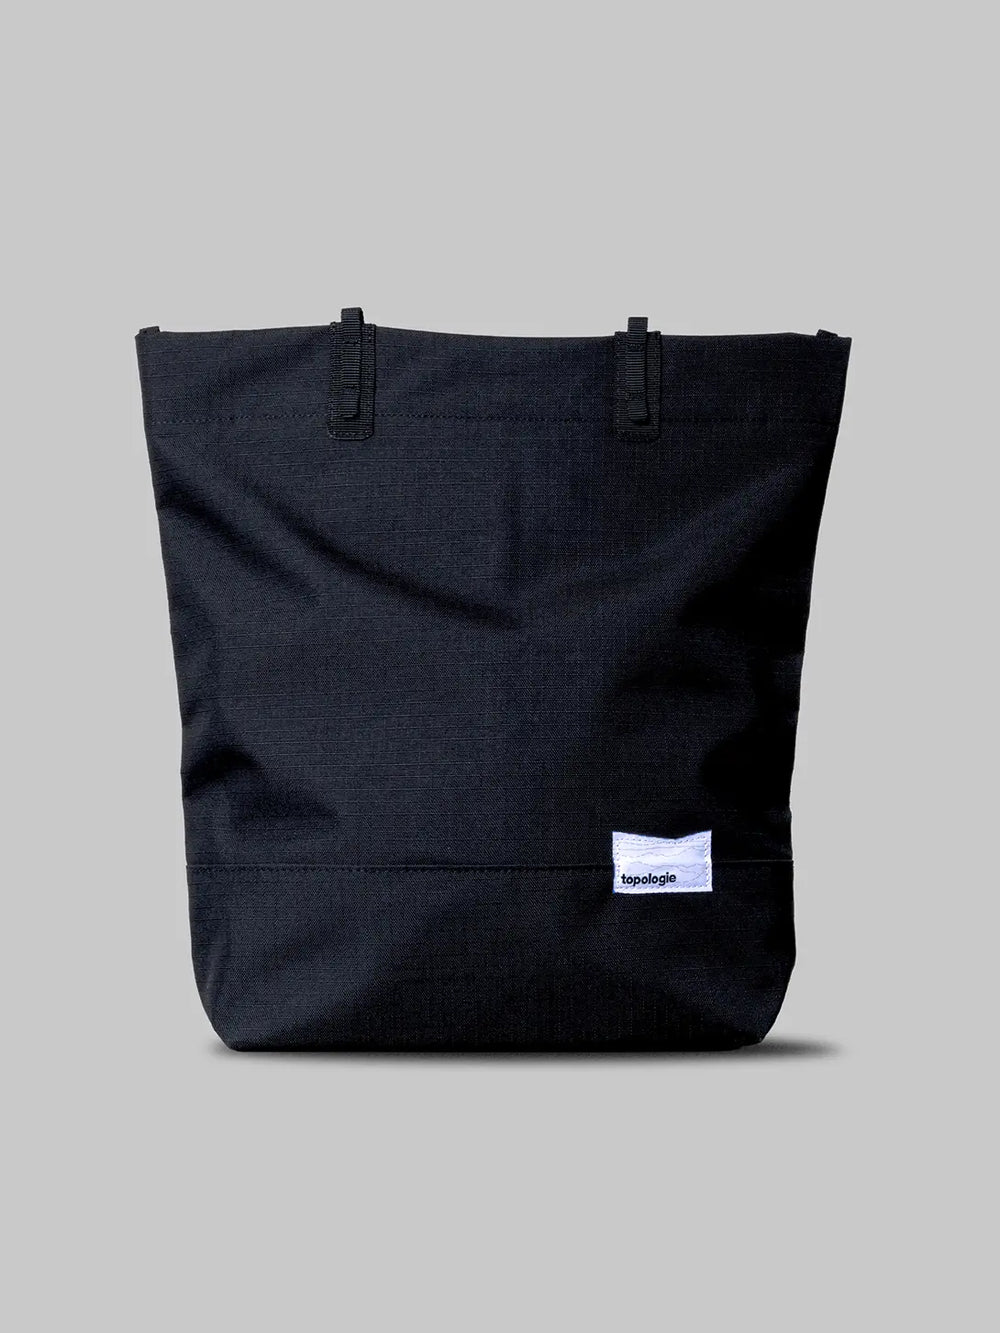 Black Topologie Loop Tote Bag